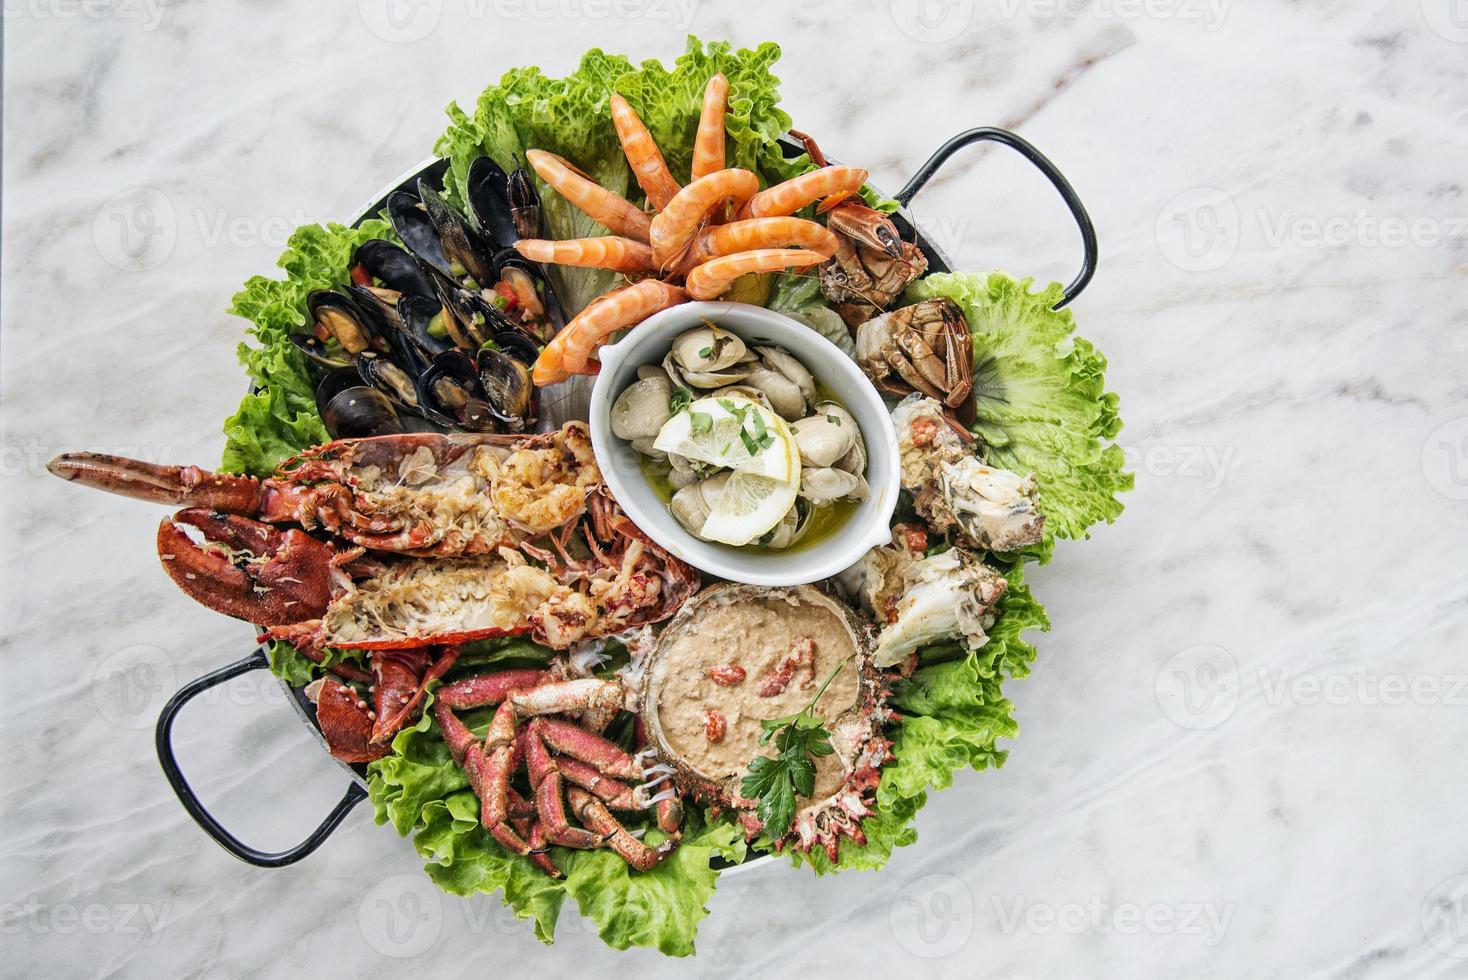 seleção mista de frutos do mar portugueses frescos servidos em pratos gourmet foto